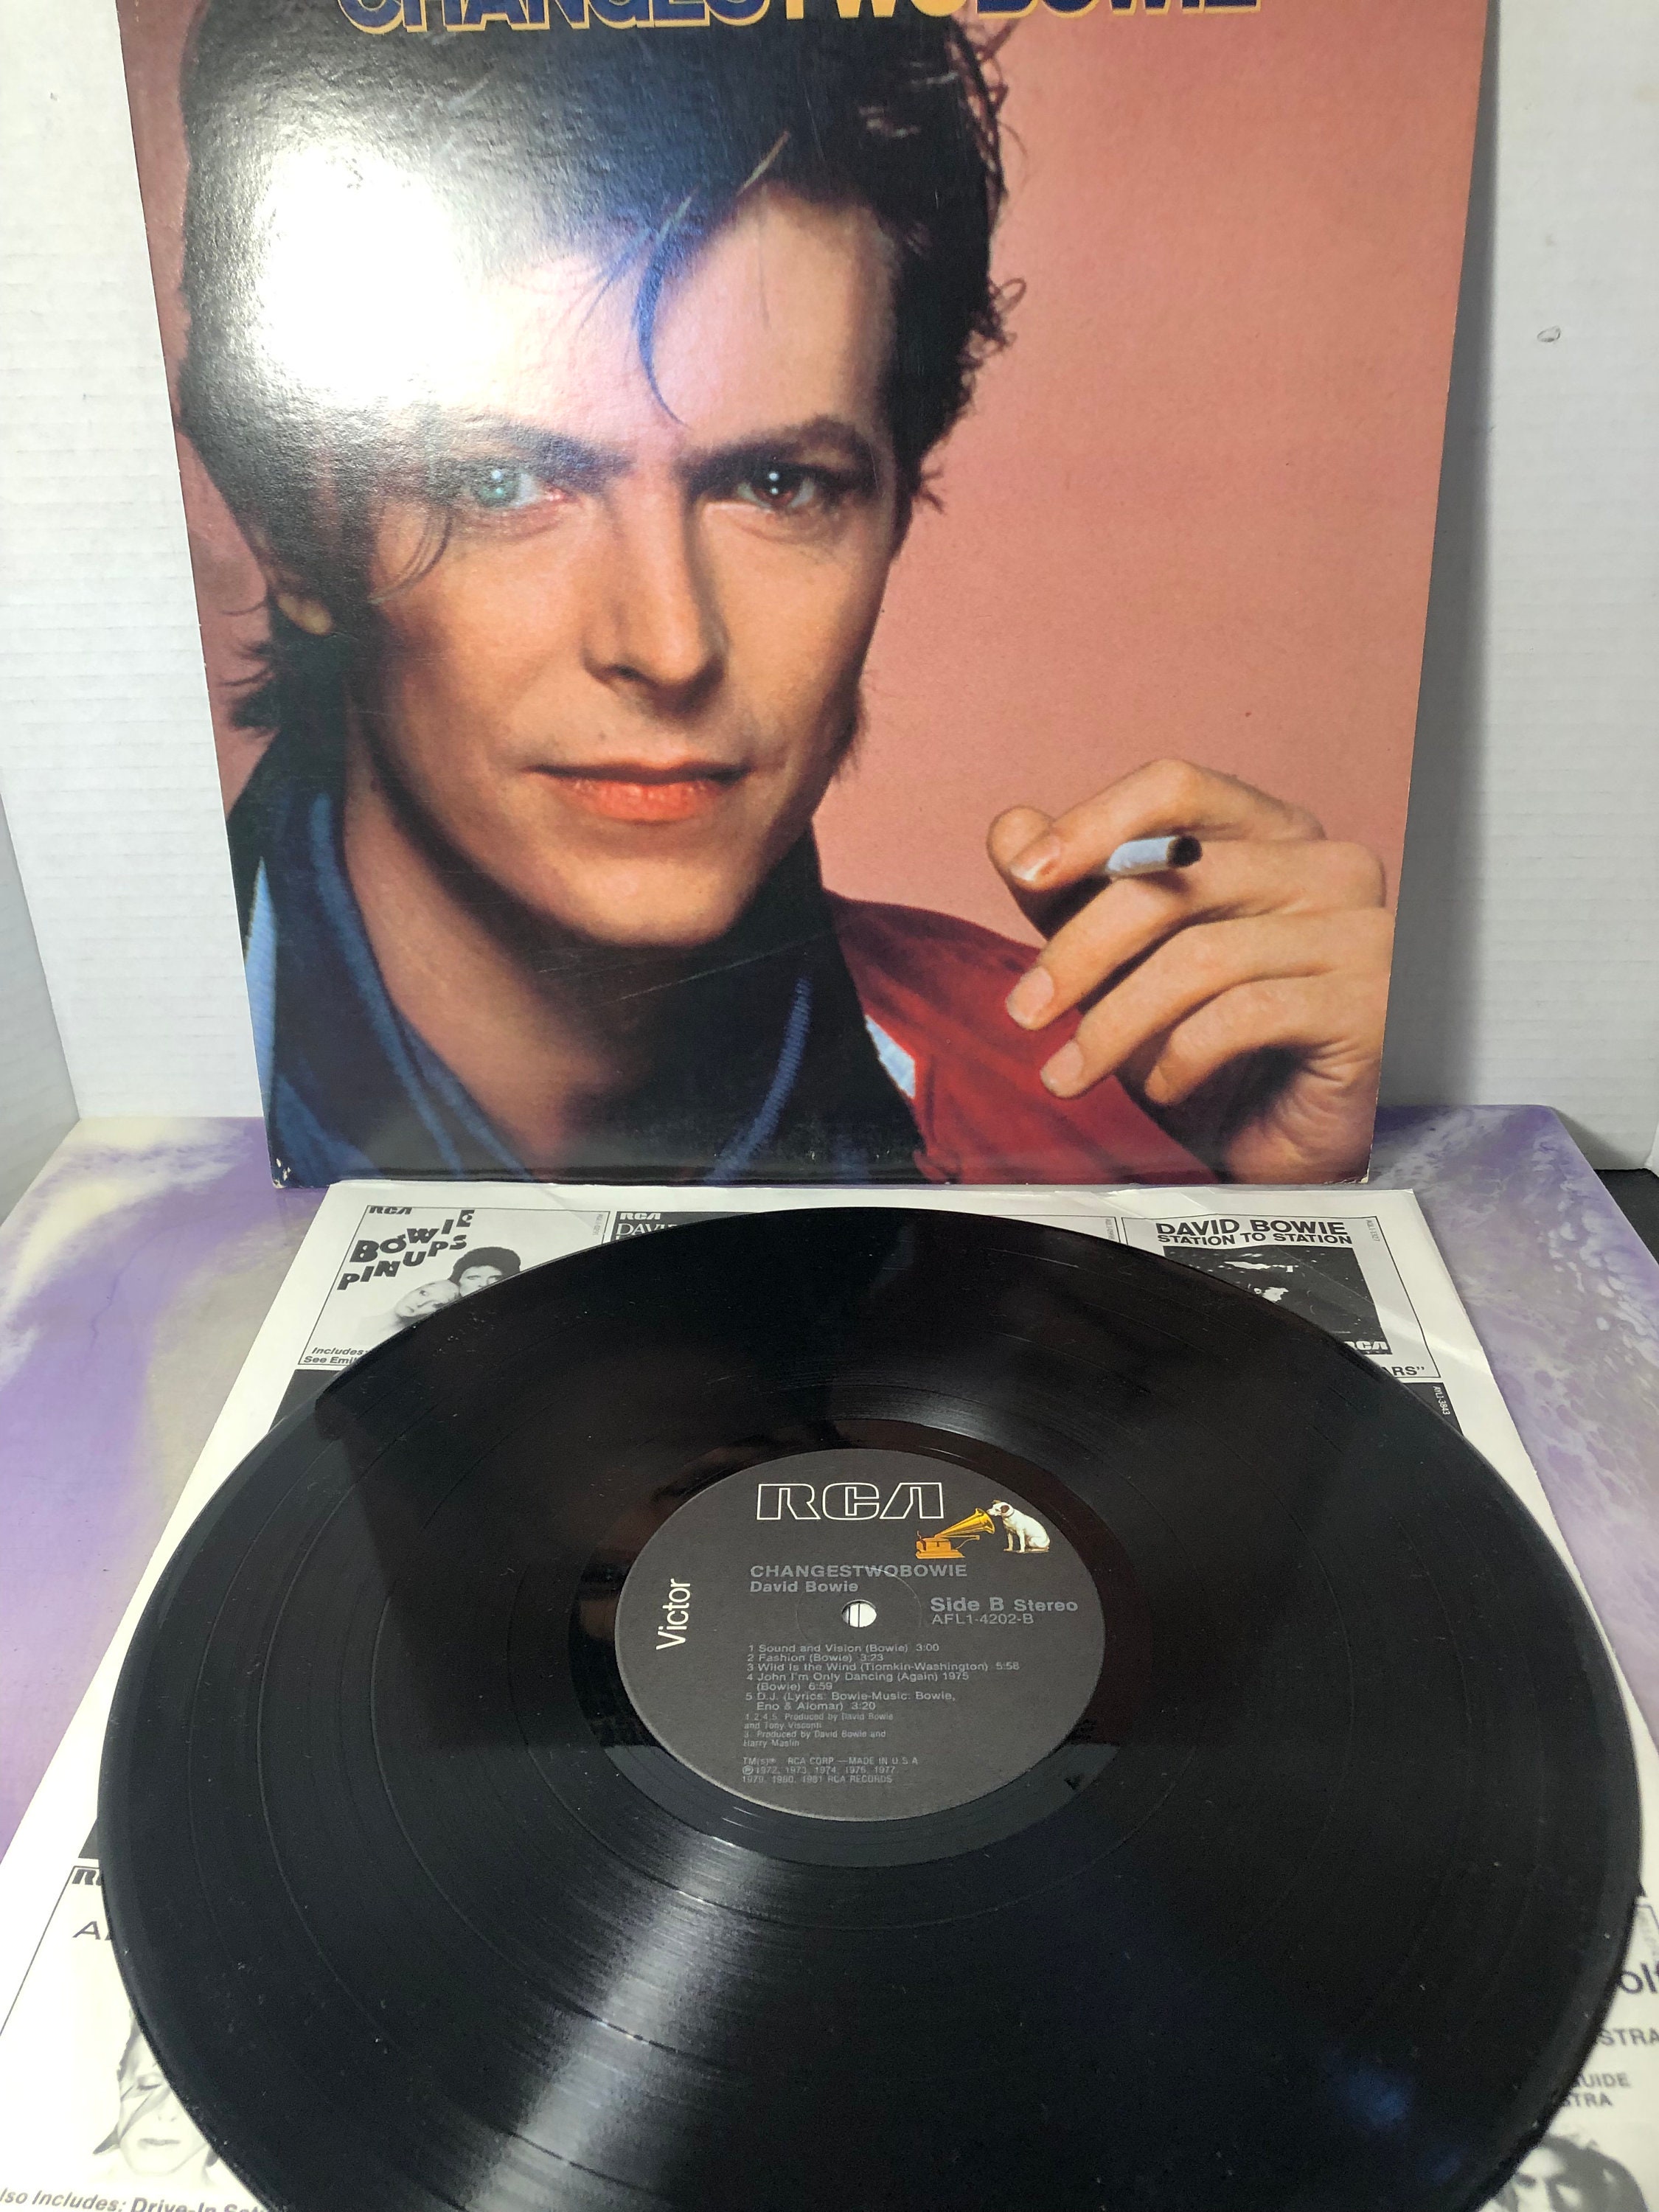 Vintage David Bowie / Vinyl Record Changestwobowie Vintage